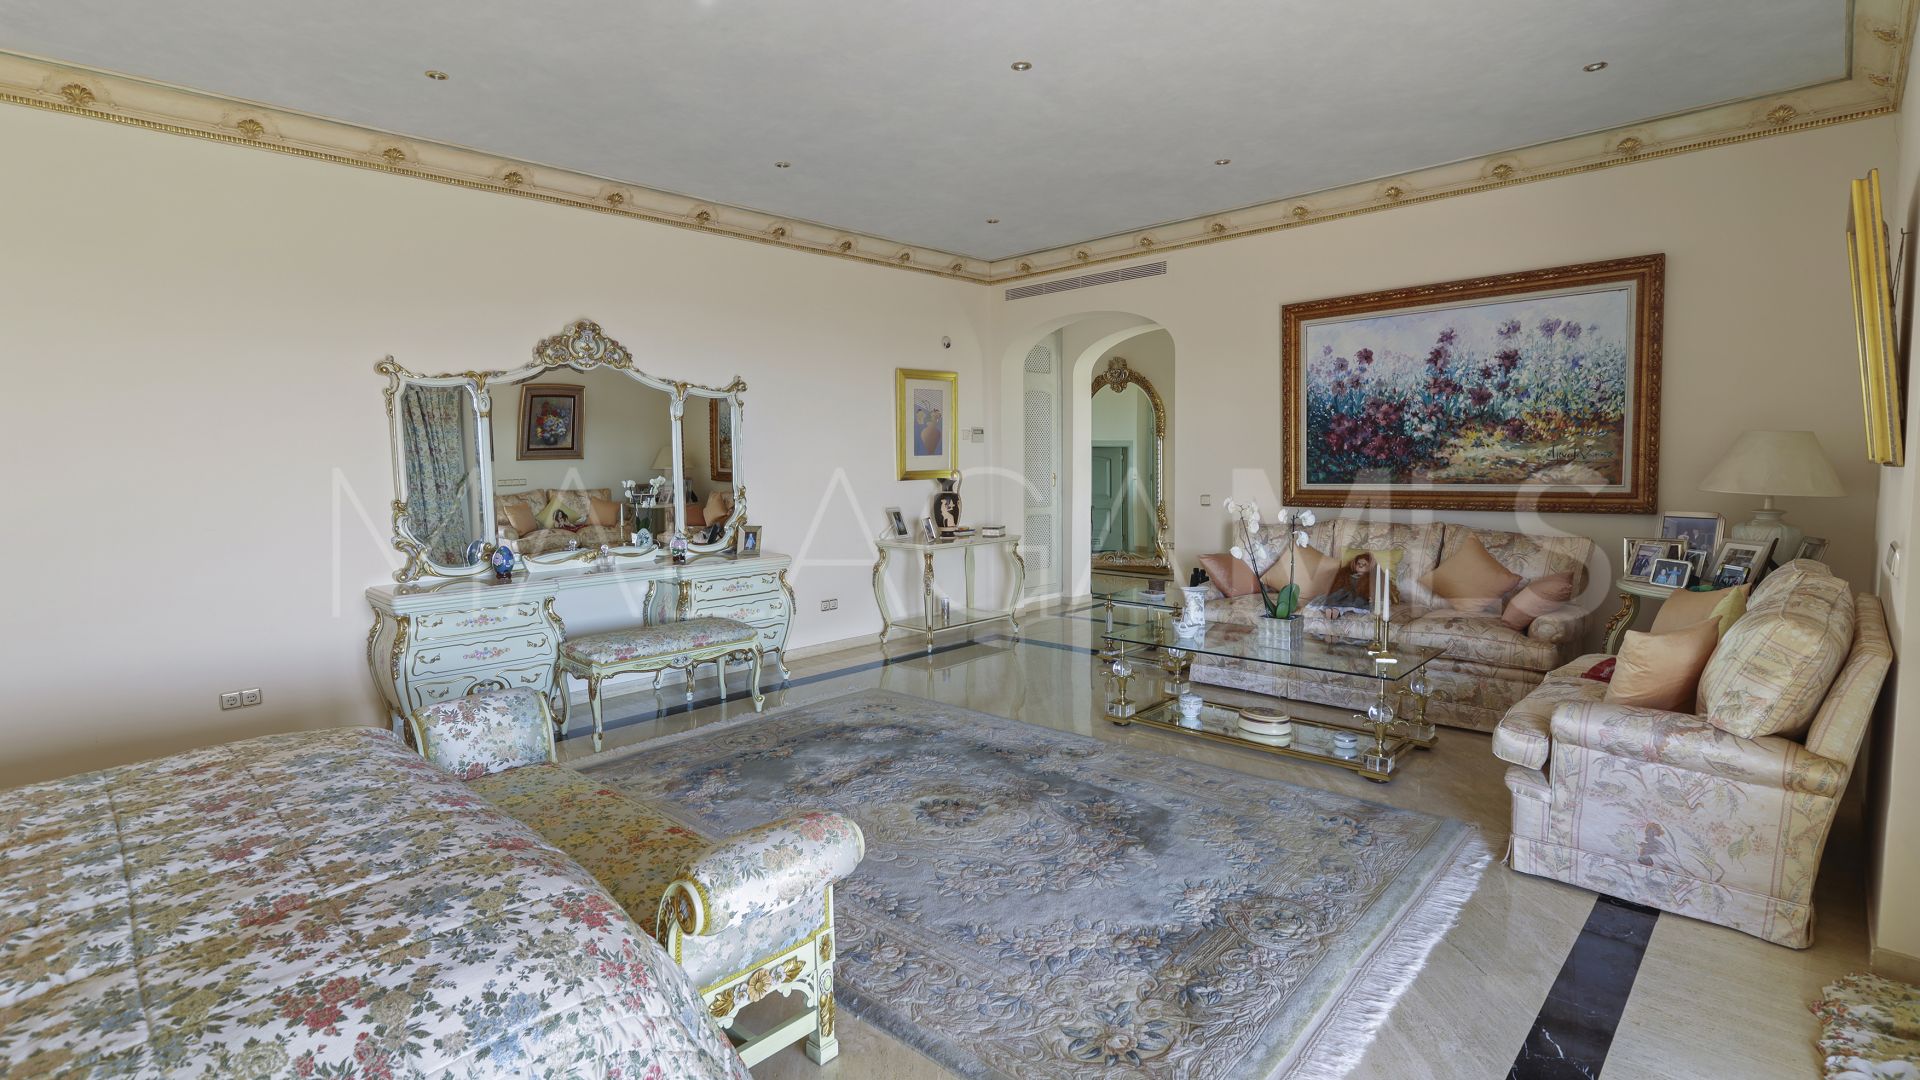 5 bedrooms villa in Paraiso Alto for sale